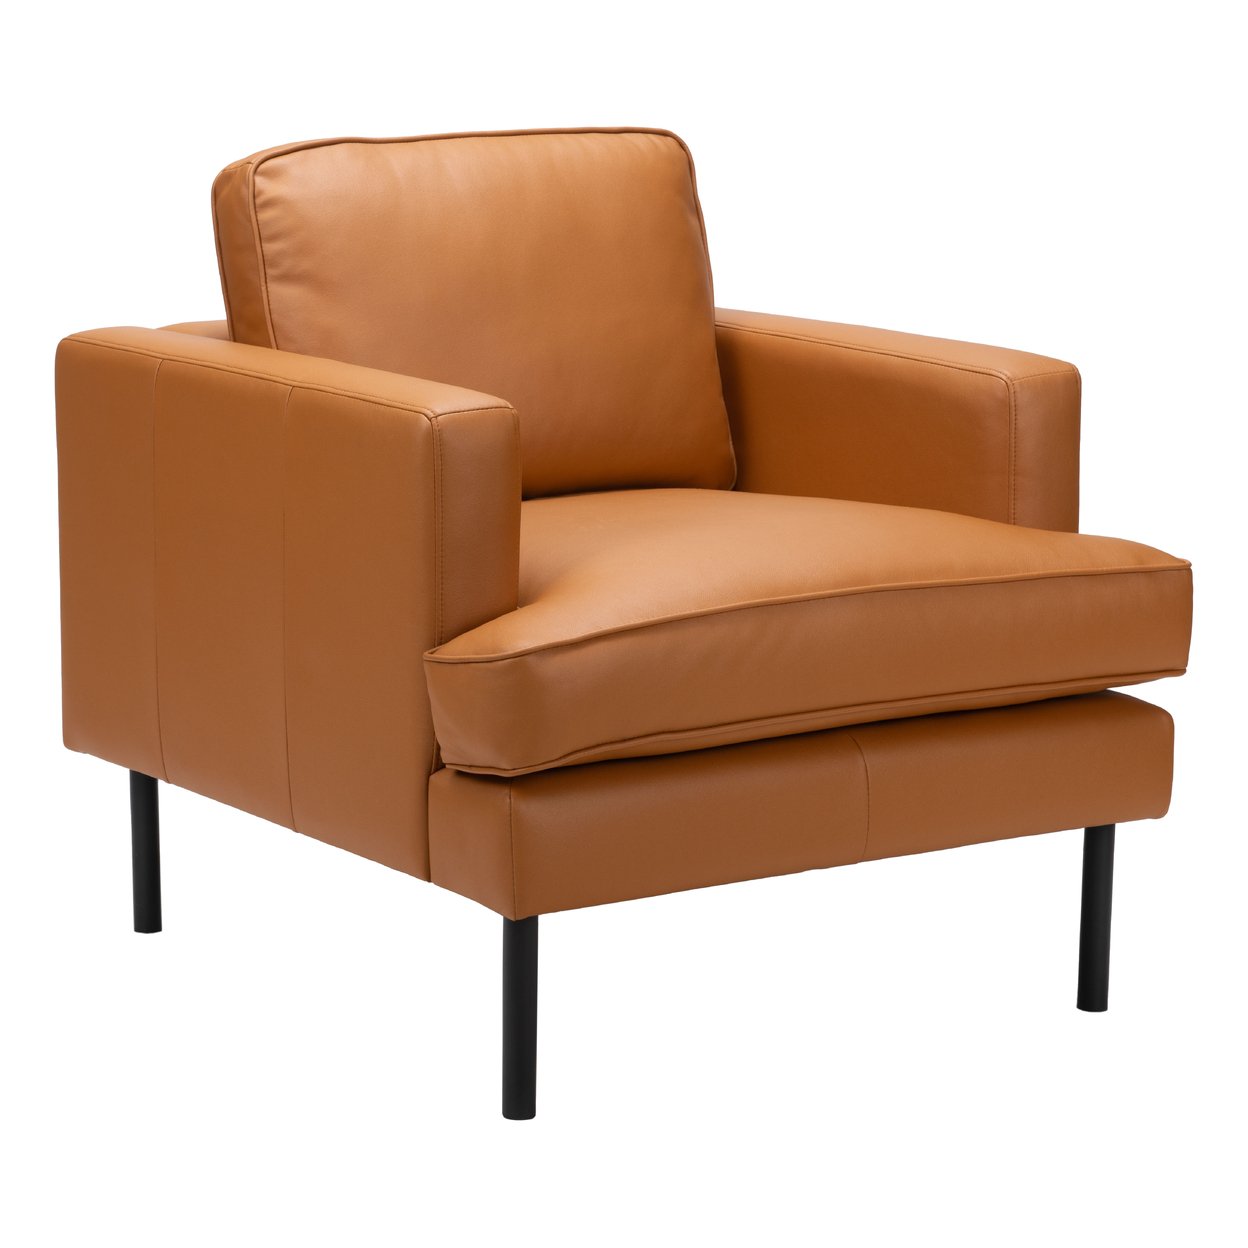 Zuo Modern Contemporary Inc. Decade Armchair